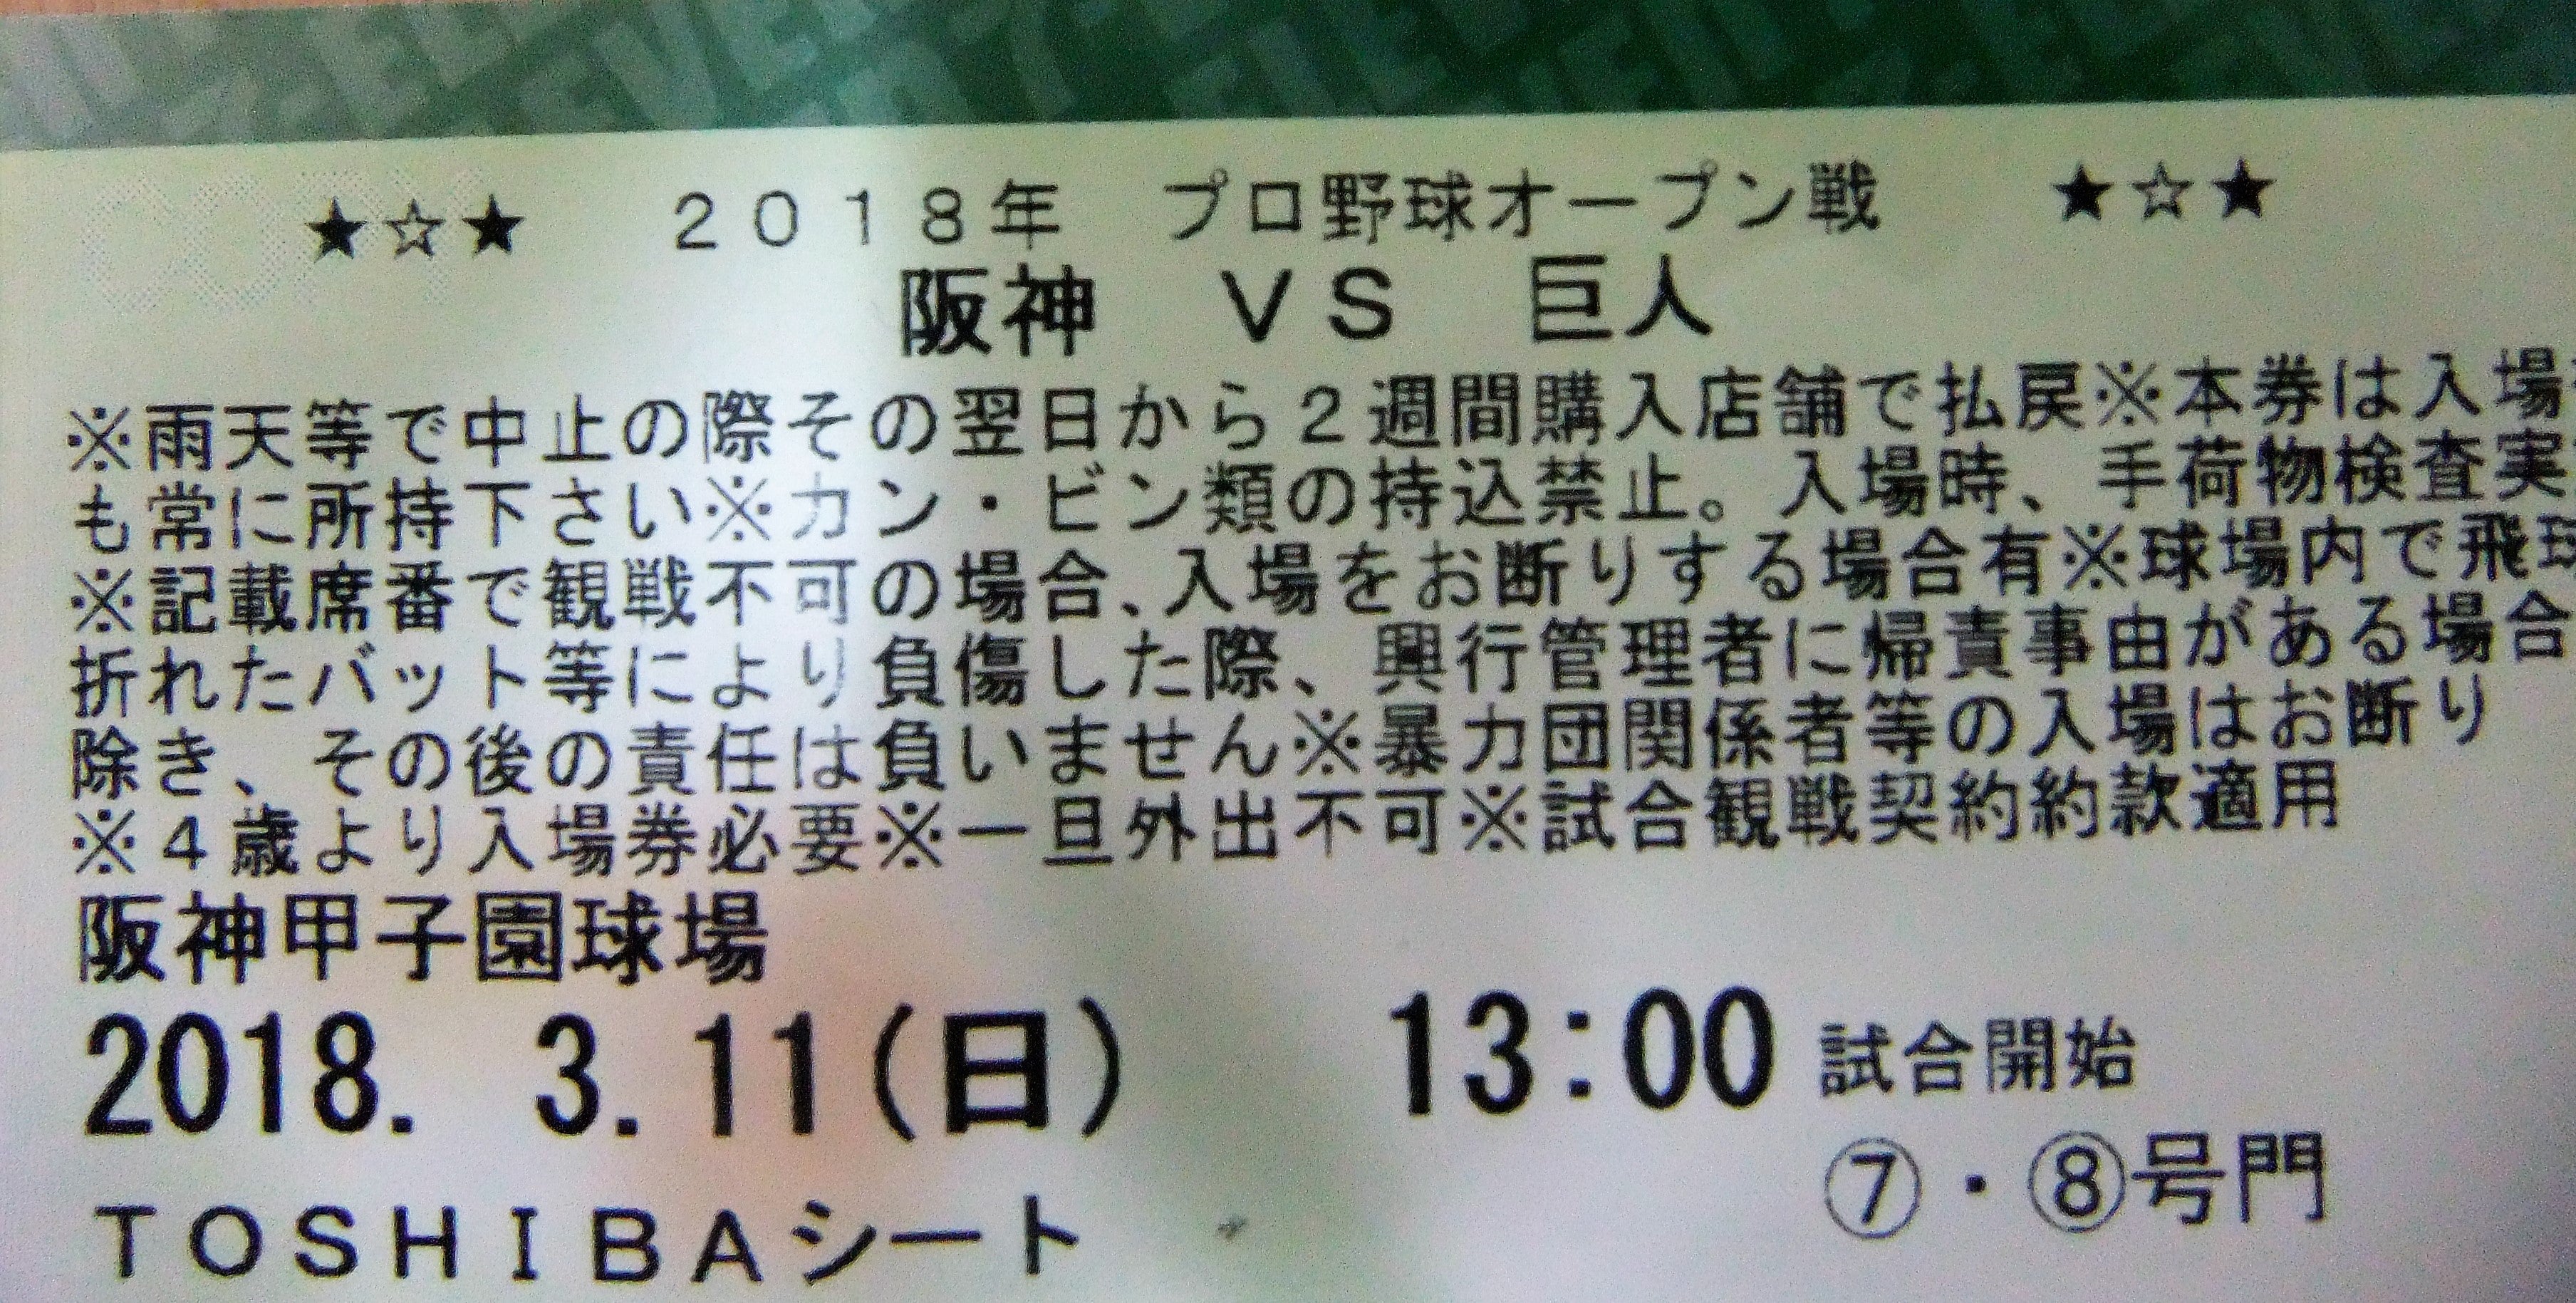 阪神タイガース - 阪神 vs 中日 5月13日(木) 甲子園 アイビーシート